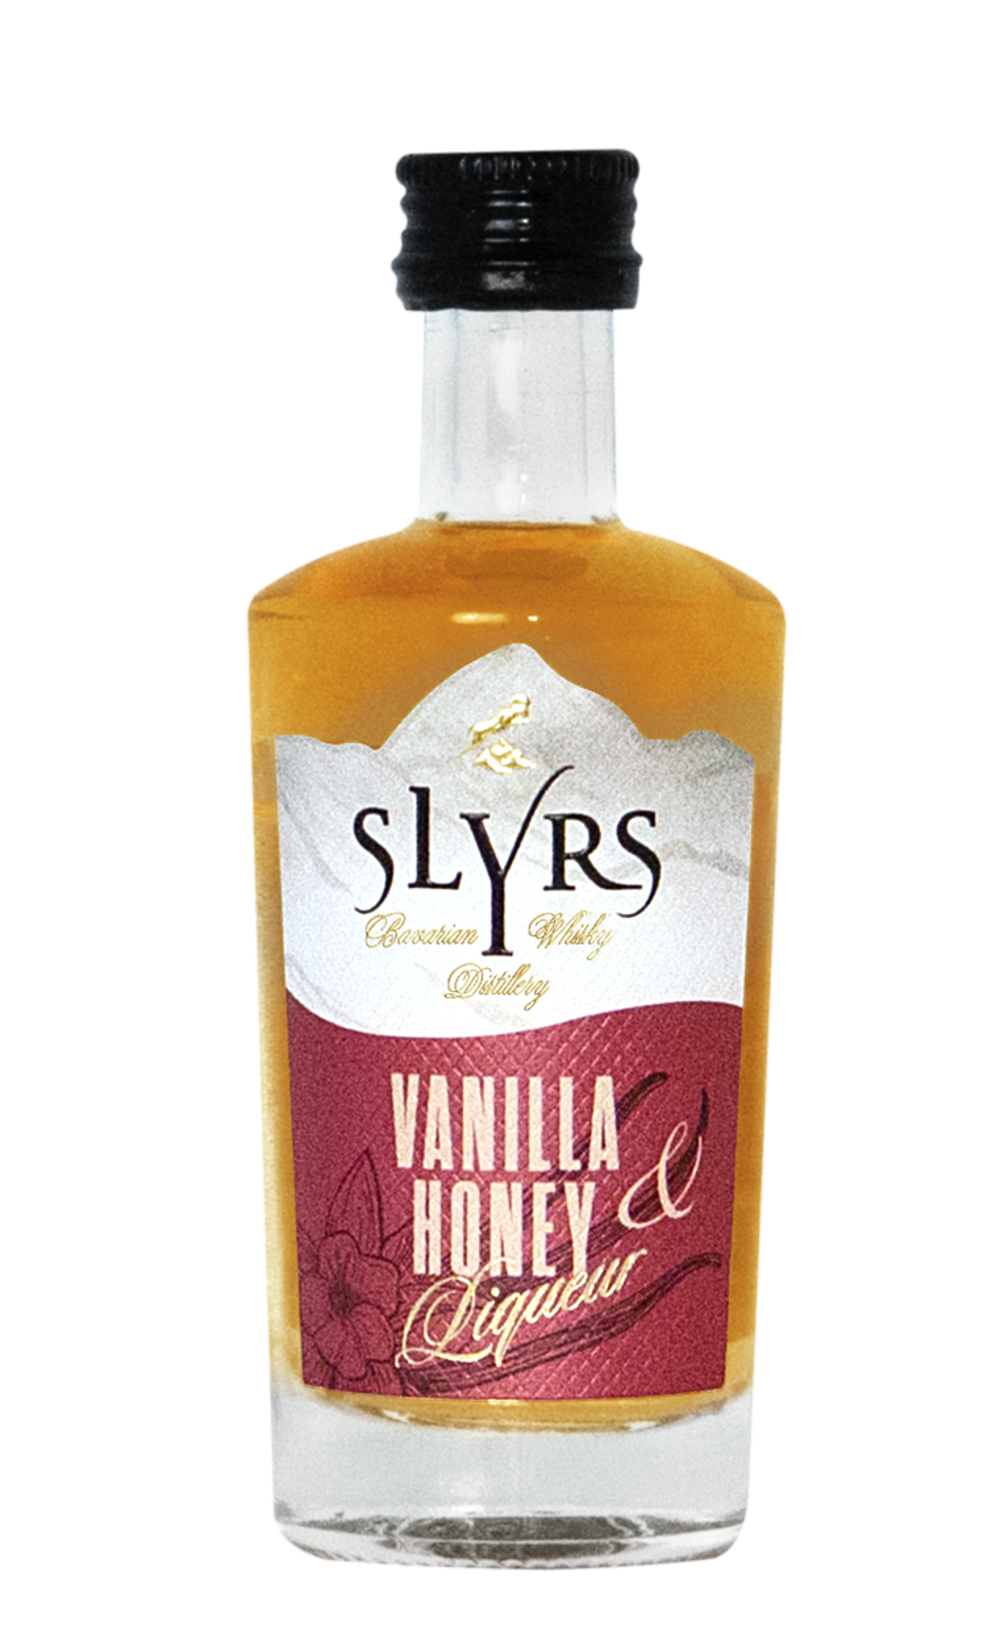 SLYRS Vanilla&Honey Liqueur 30% vol. 30.0% 0.05L, Spirits